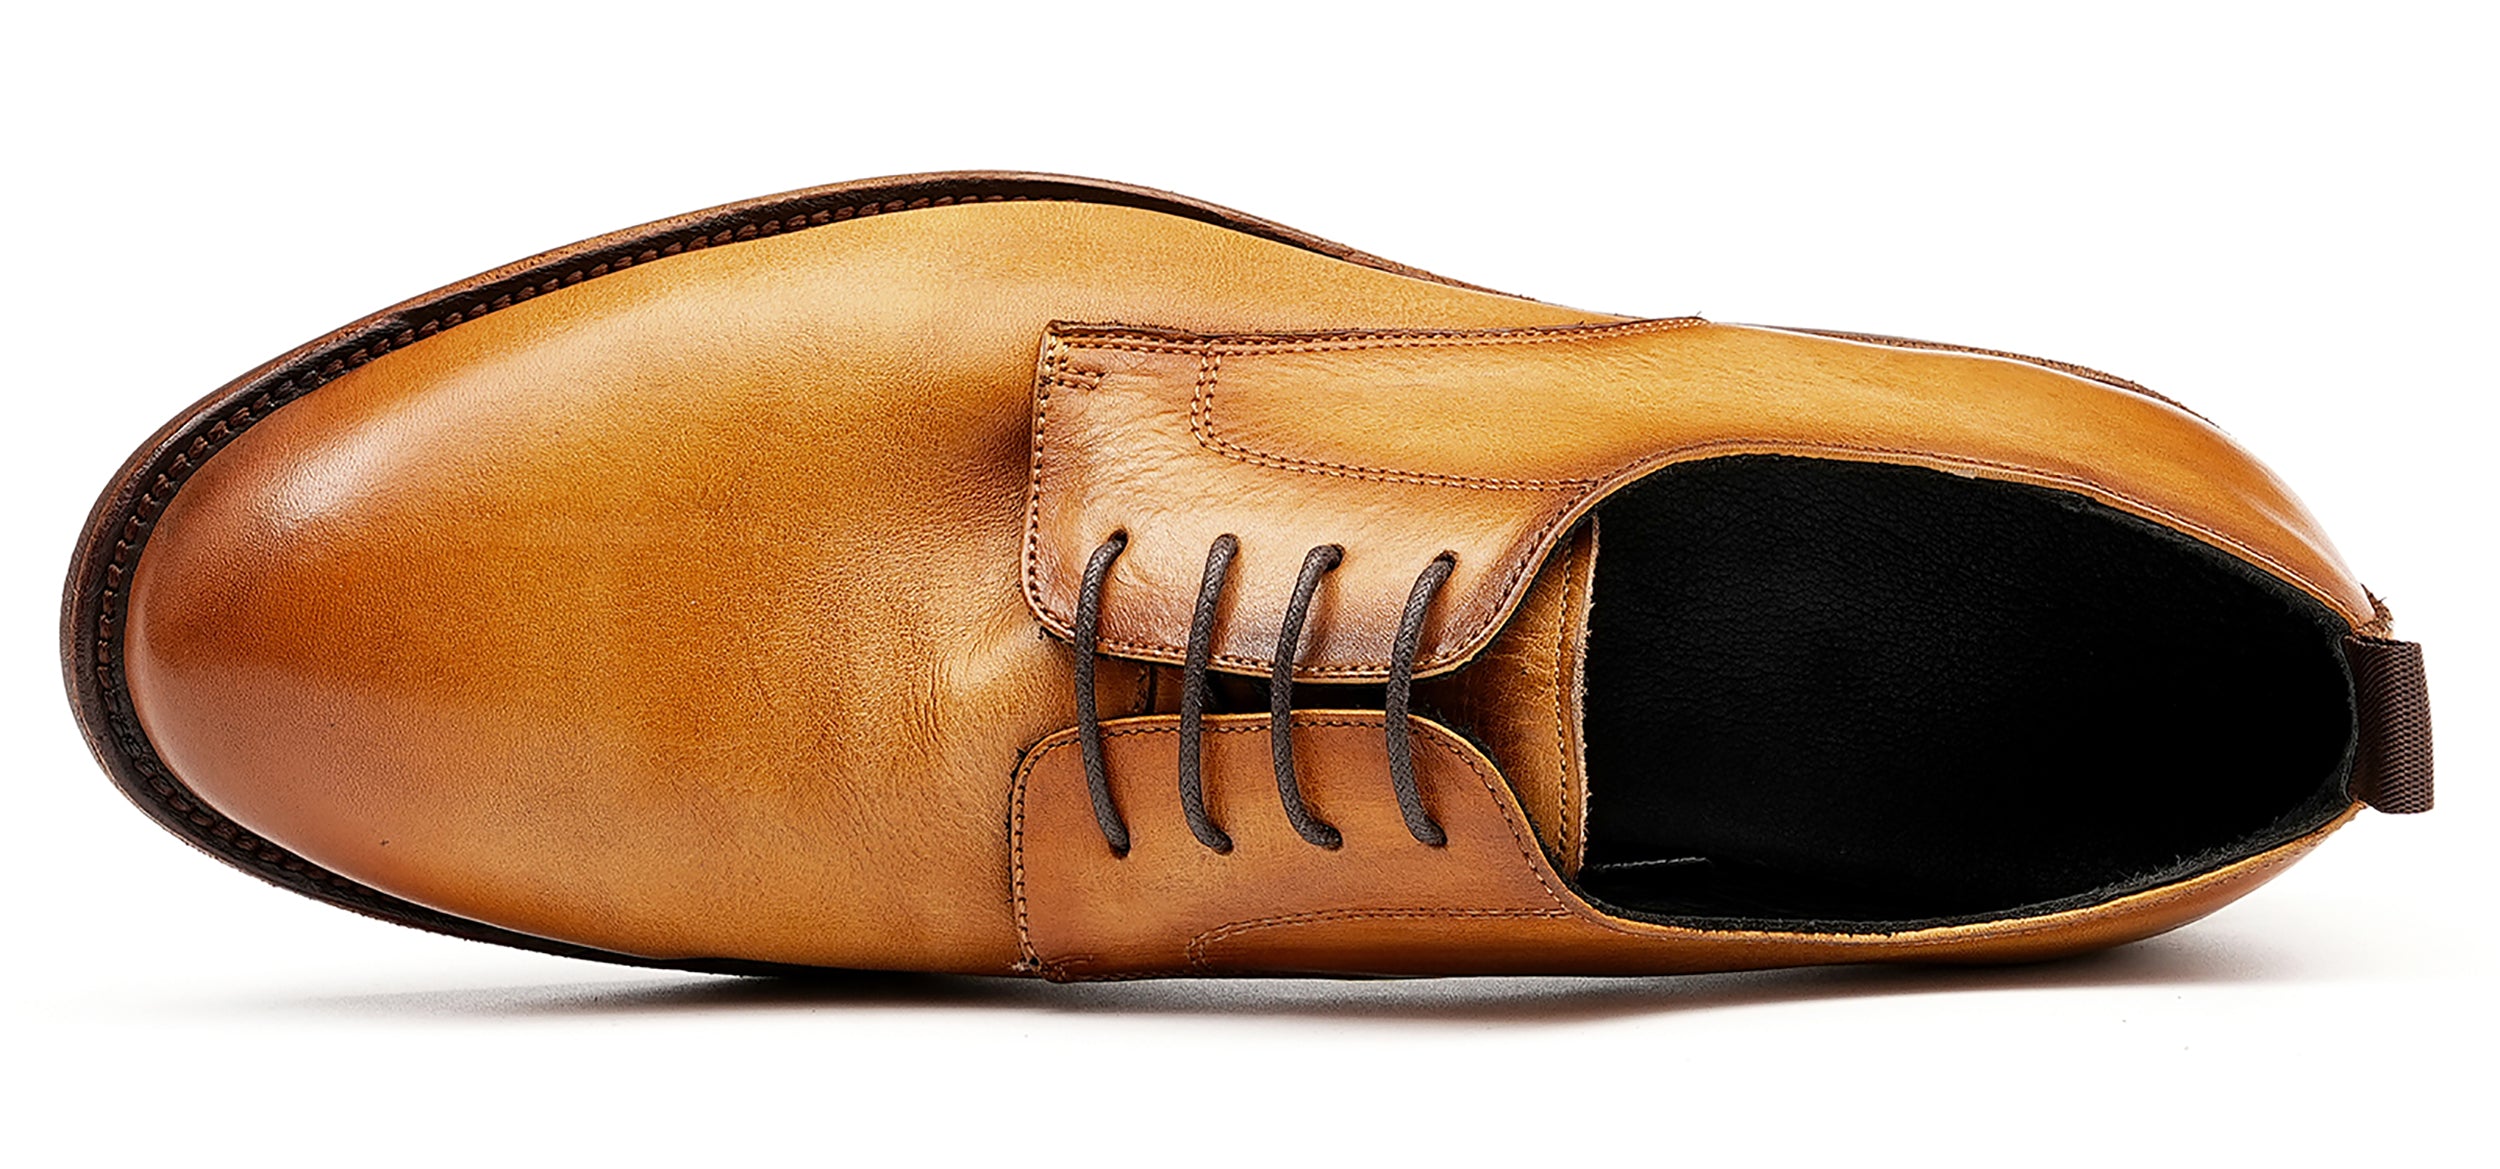 Men's Plain Toe Derby Dress Formal Shoes